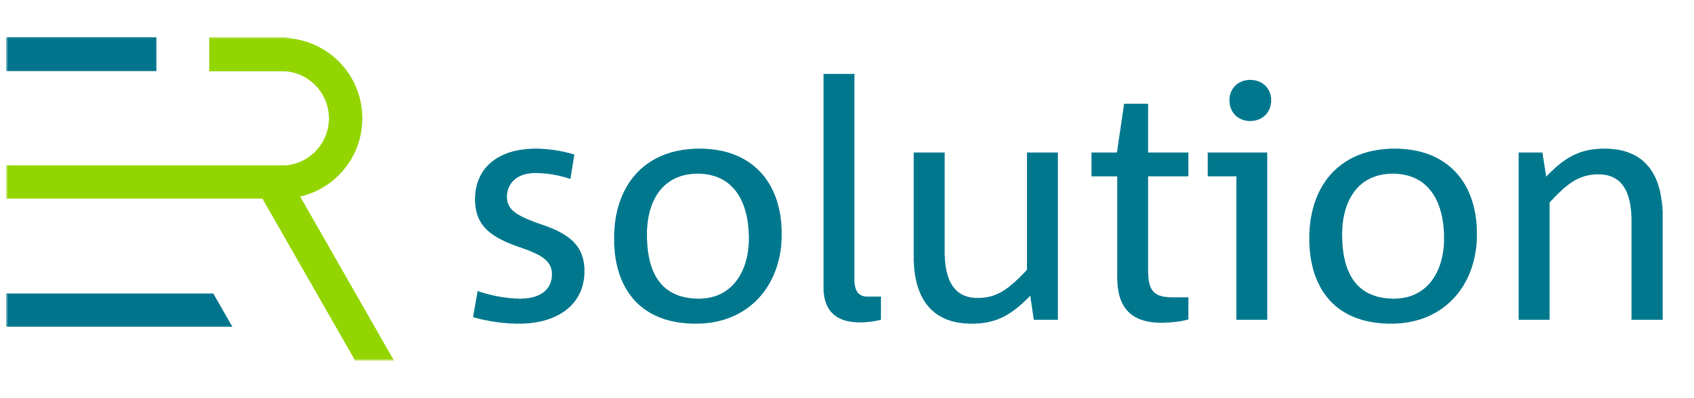 ER solution Logo